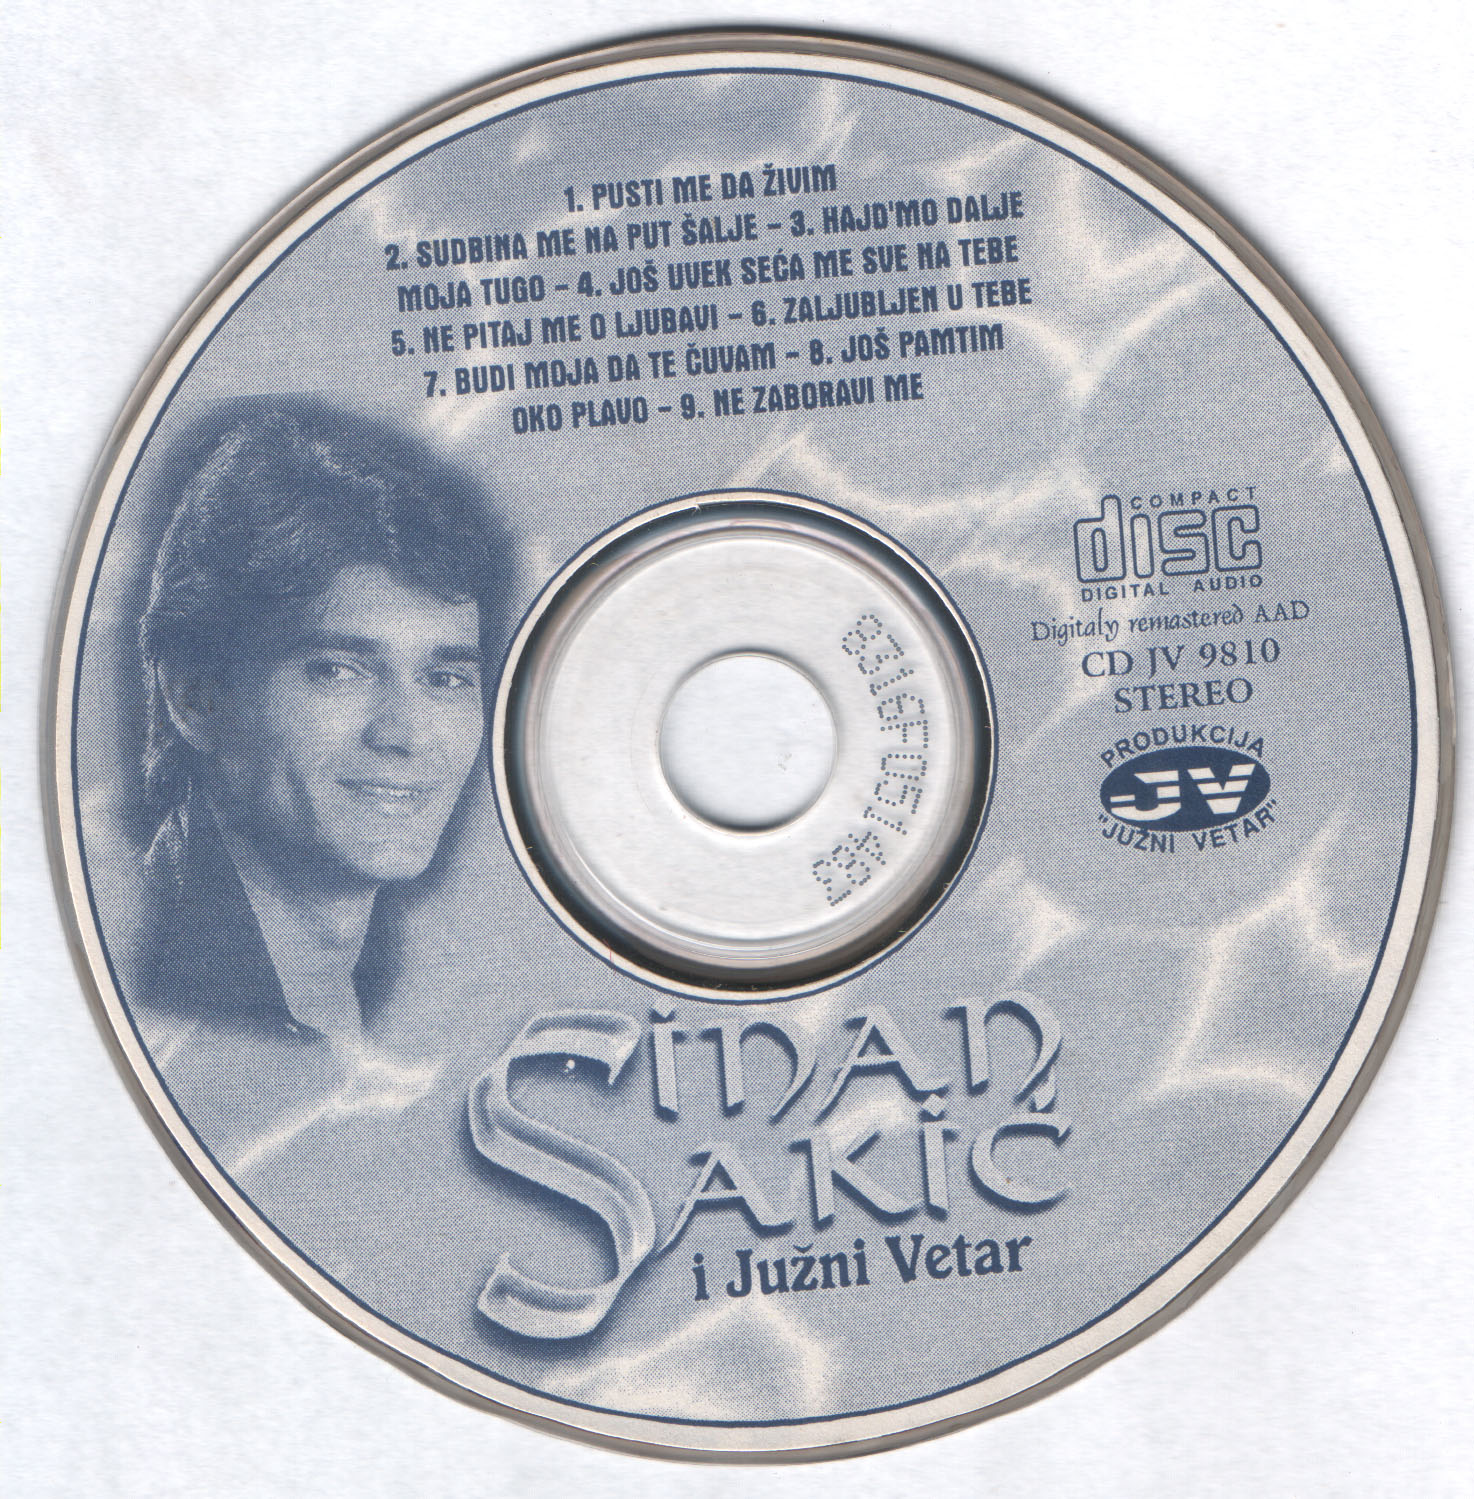 Sinan Sakic 1986 Cd